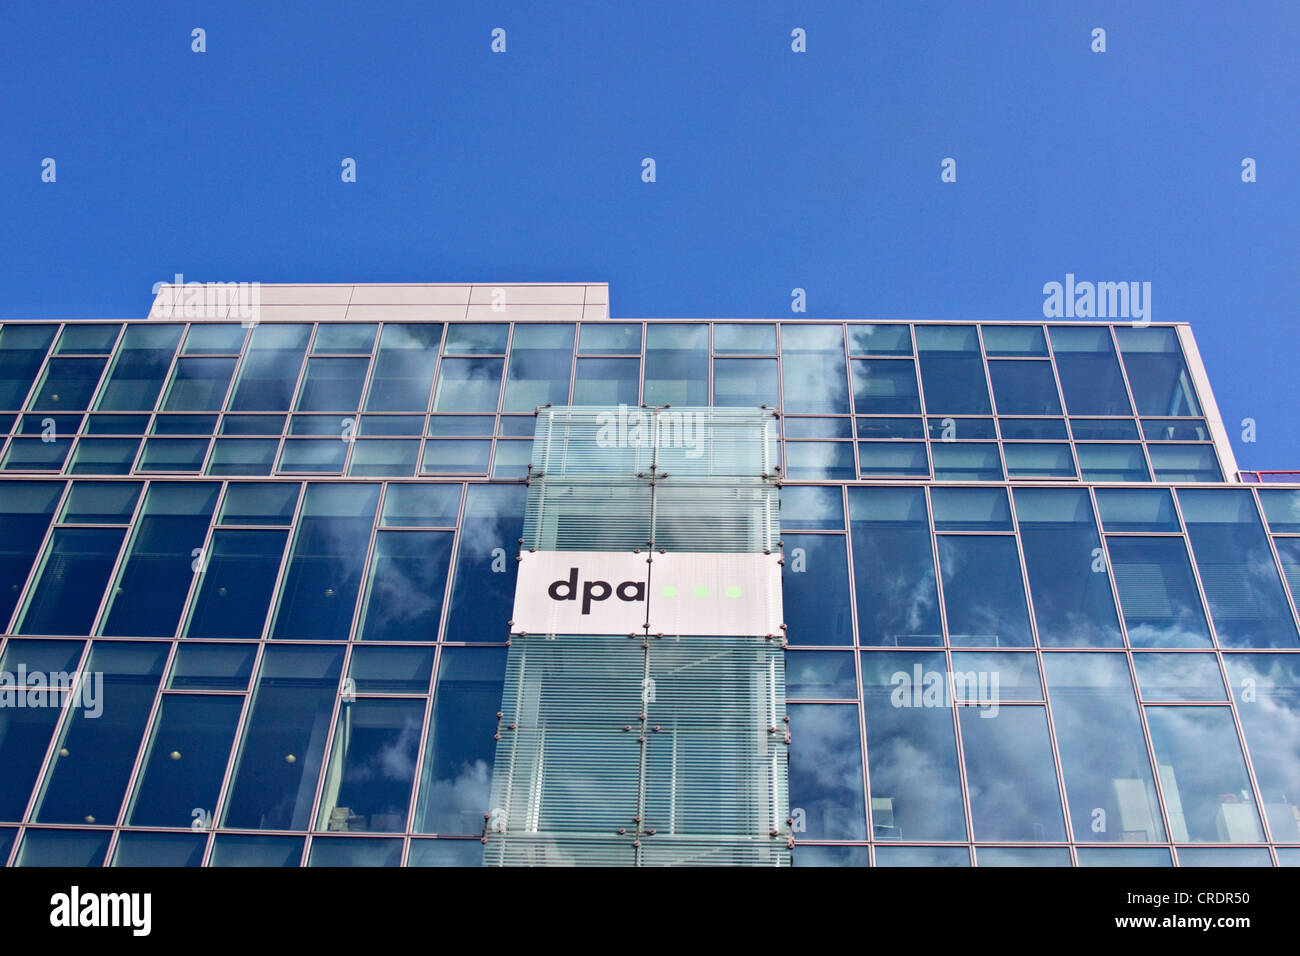 Edificio di DPA, Deutsche Presse-Agentur, agenzia tedesca di stampa, Berlino, Germania, Europa Foto Stock